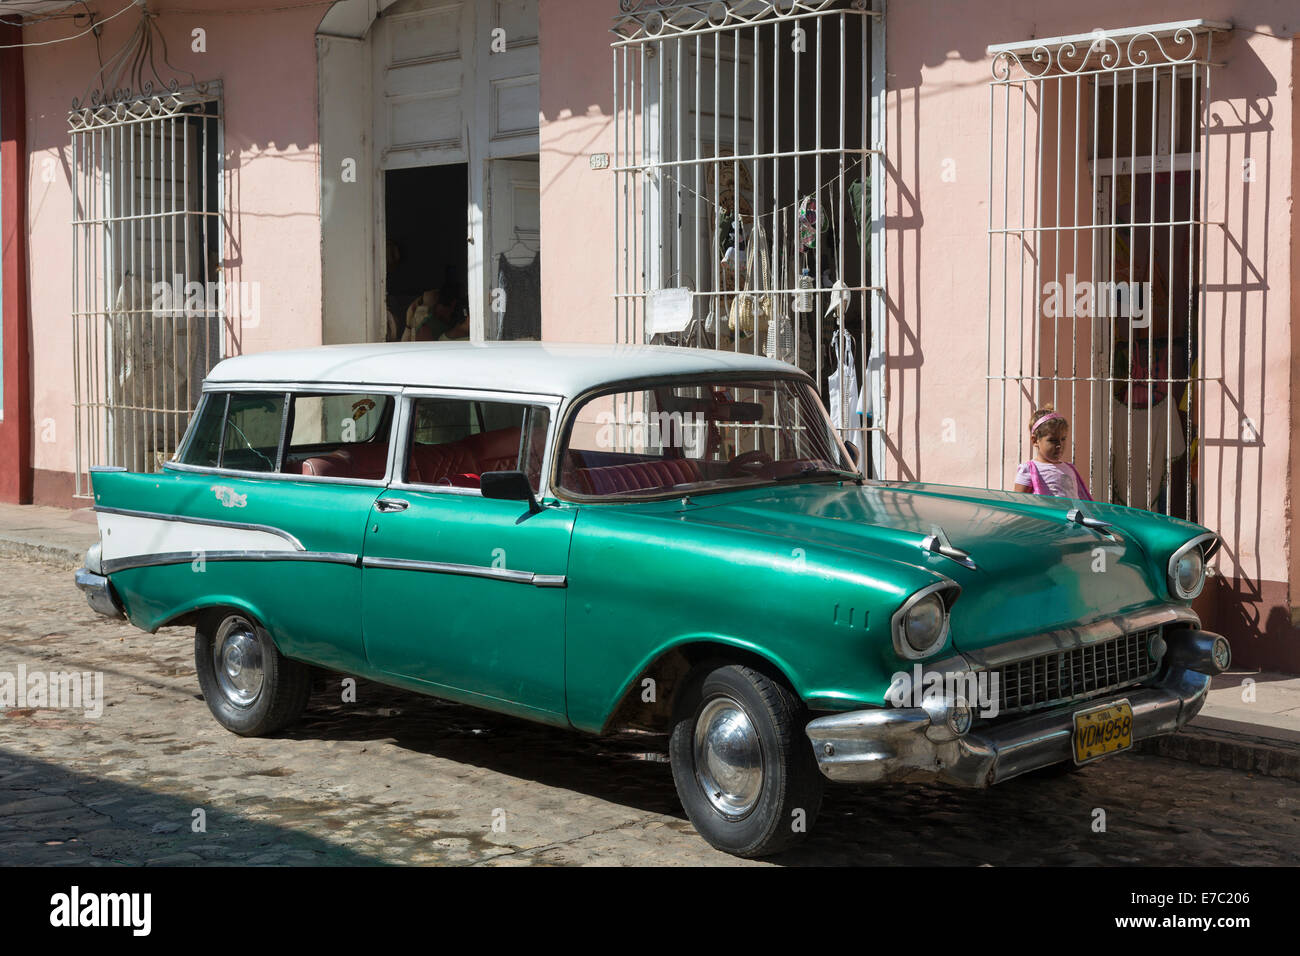 old 1950s car, Havana, Cuba Stock Photo